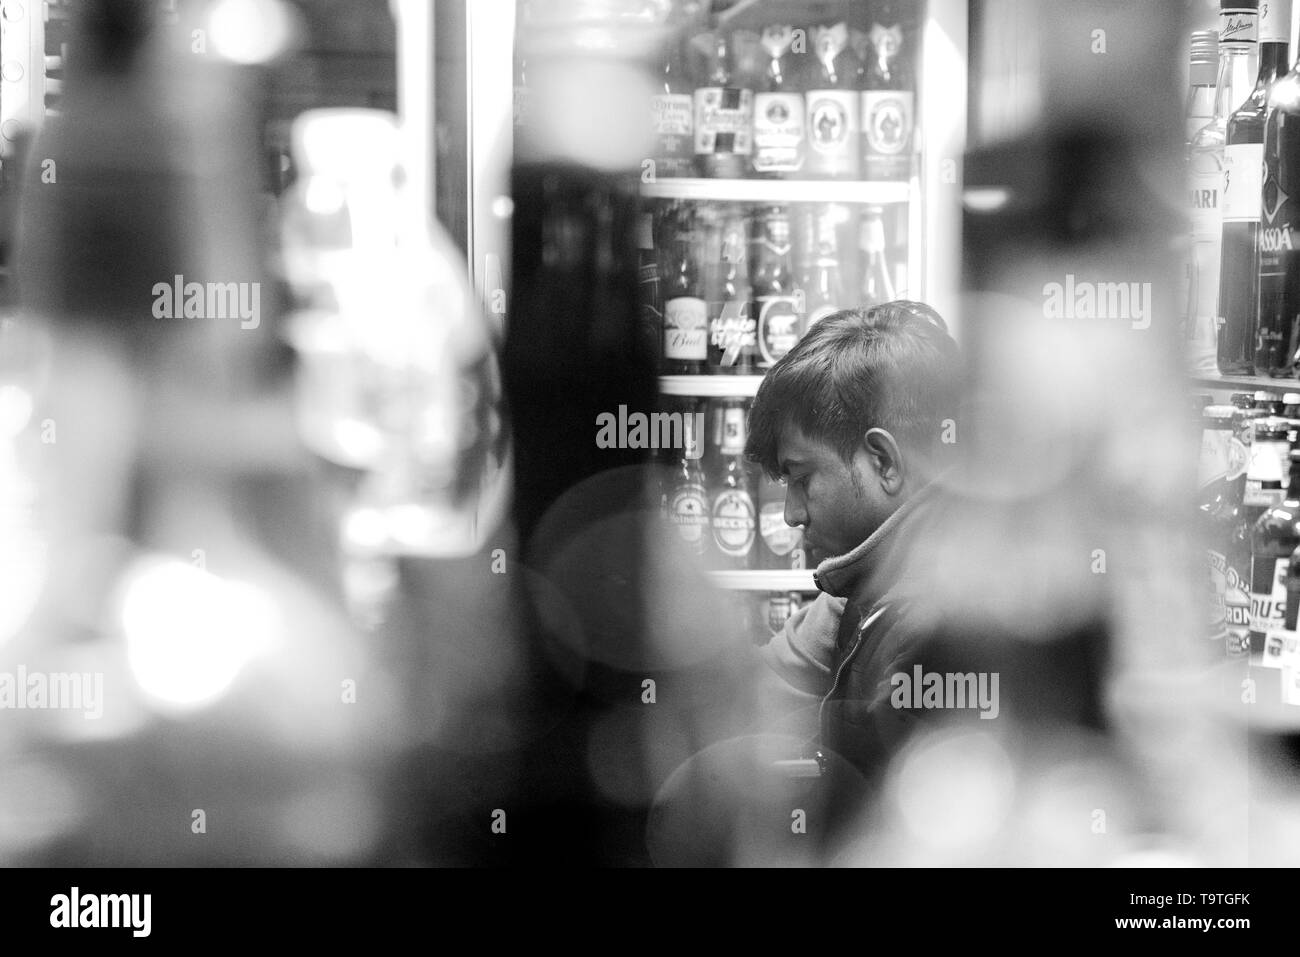 Homme assis parmi les bouteilles avec flou, en noir et blanc Banque D'Images